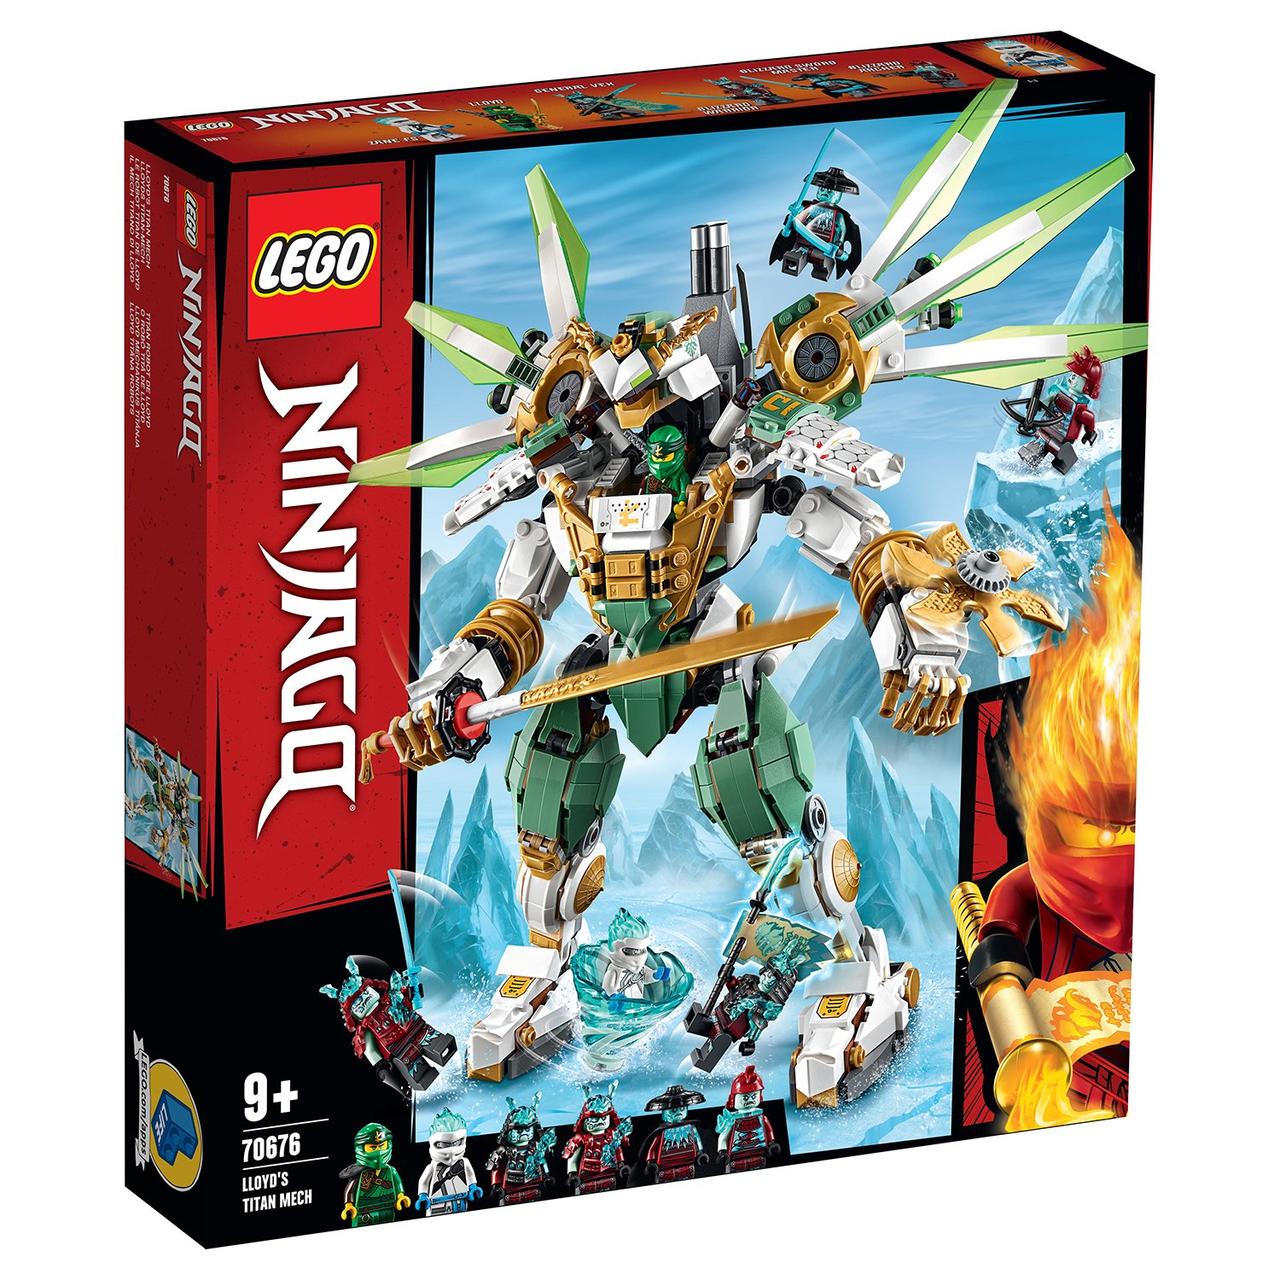 70676 Lego Ninjago Механический Титан Ллойда, Лего Ниндзяго